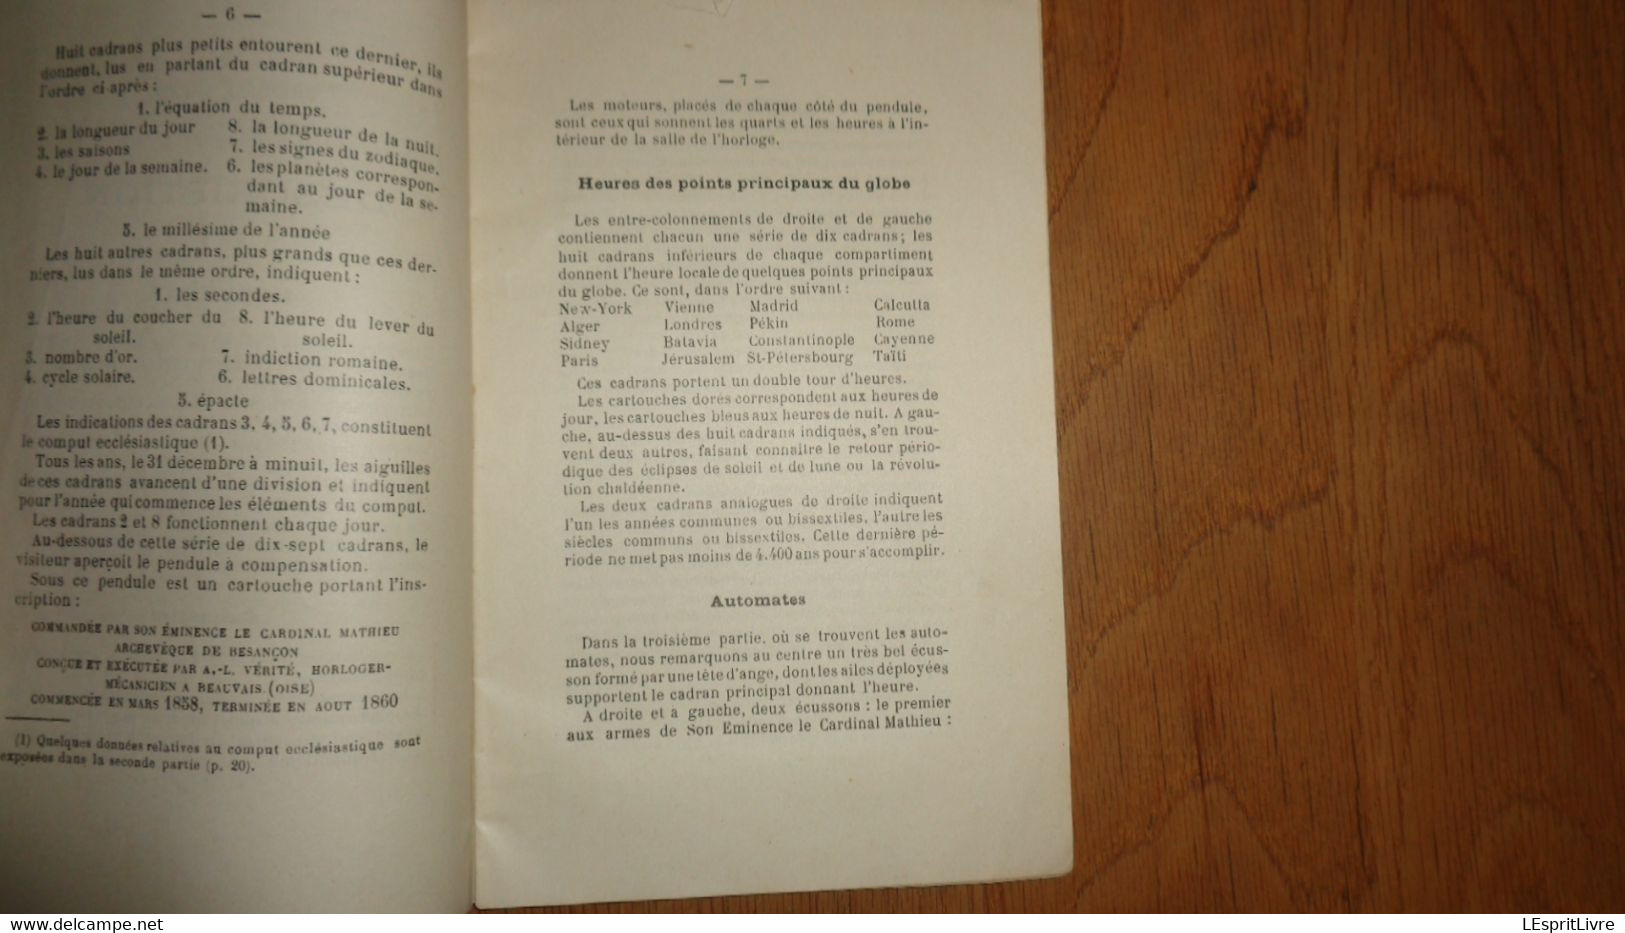 HORLOGE ASTRONOMIQUE DE SAINT JEAN DE BESANCON Notice Par R Goudey 1927 Régionalisme France Horlogerie Technique - Franche-Comté